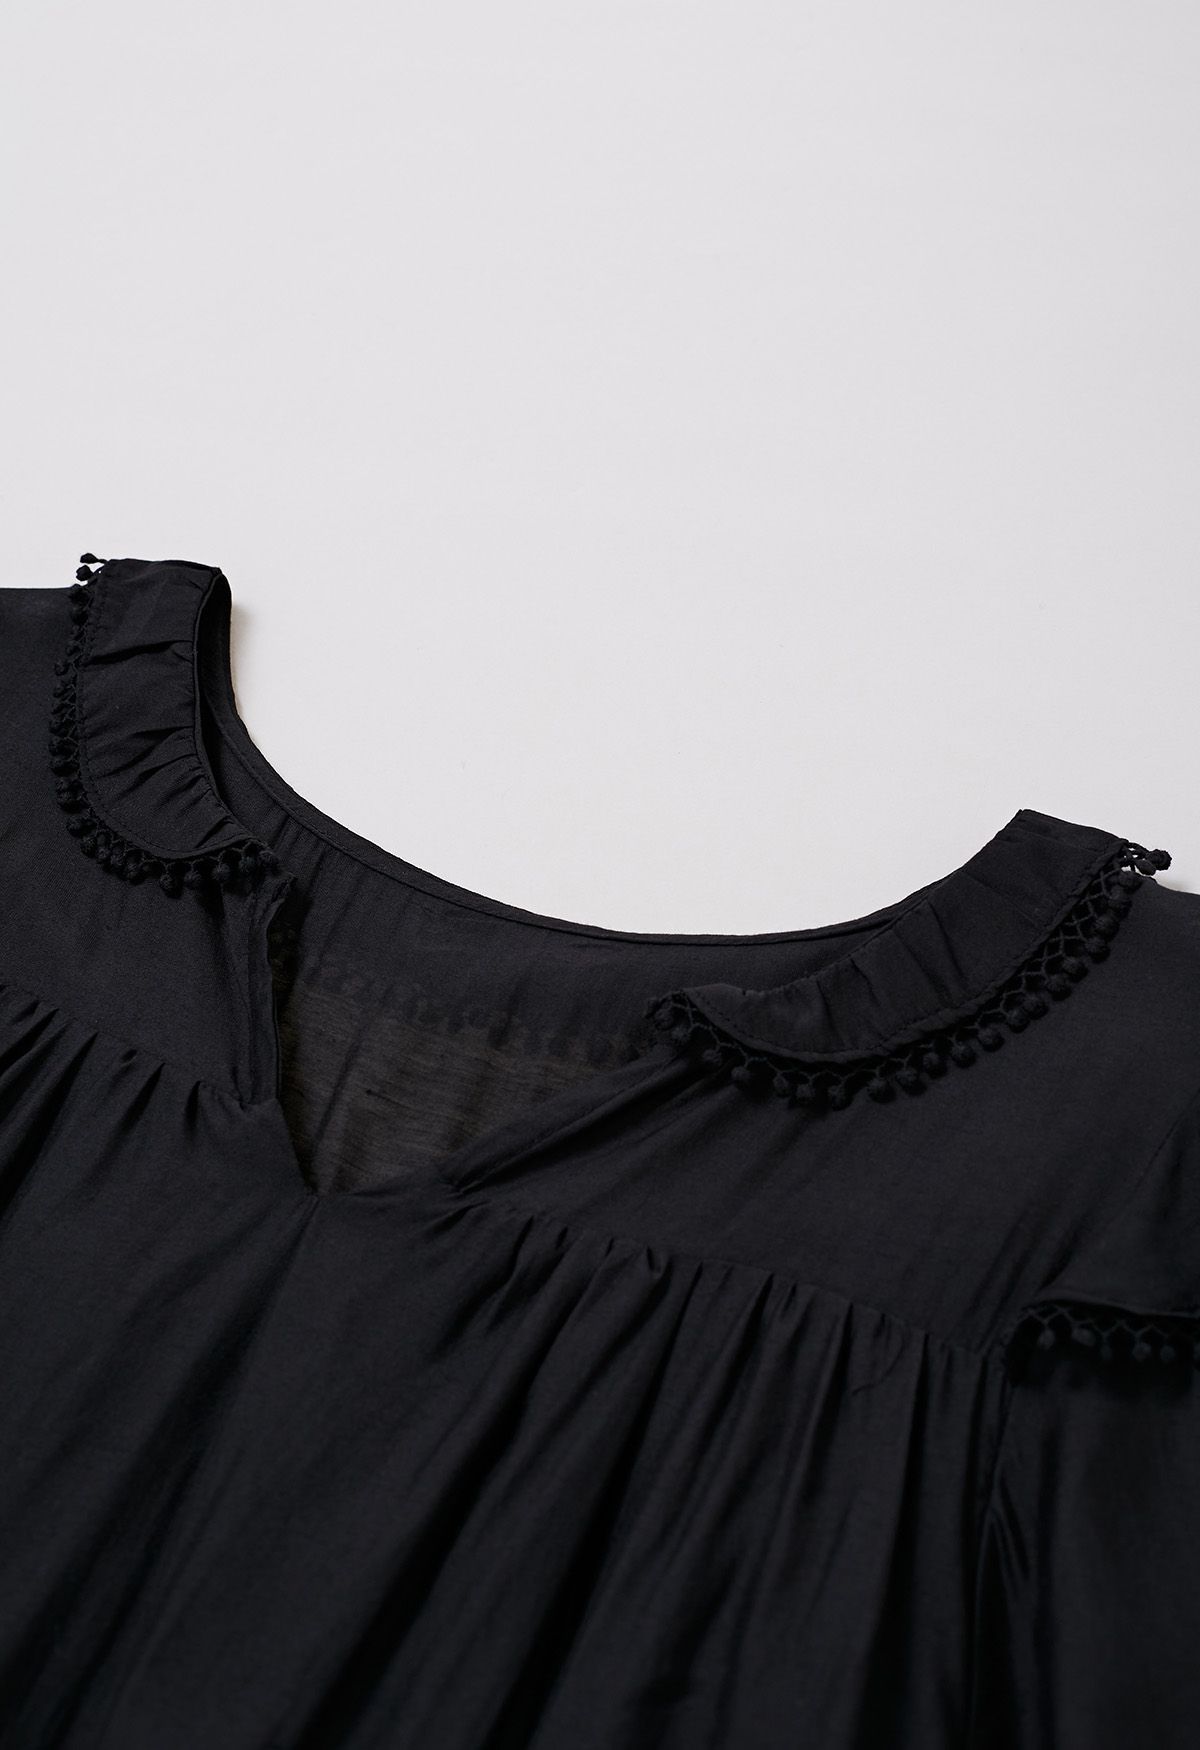 فستان قصير بأكمام متدرجة وتفاصيل هامشية باللون الأسود